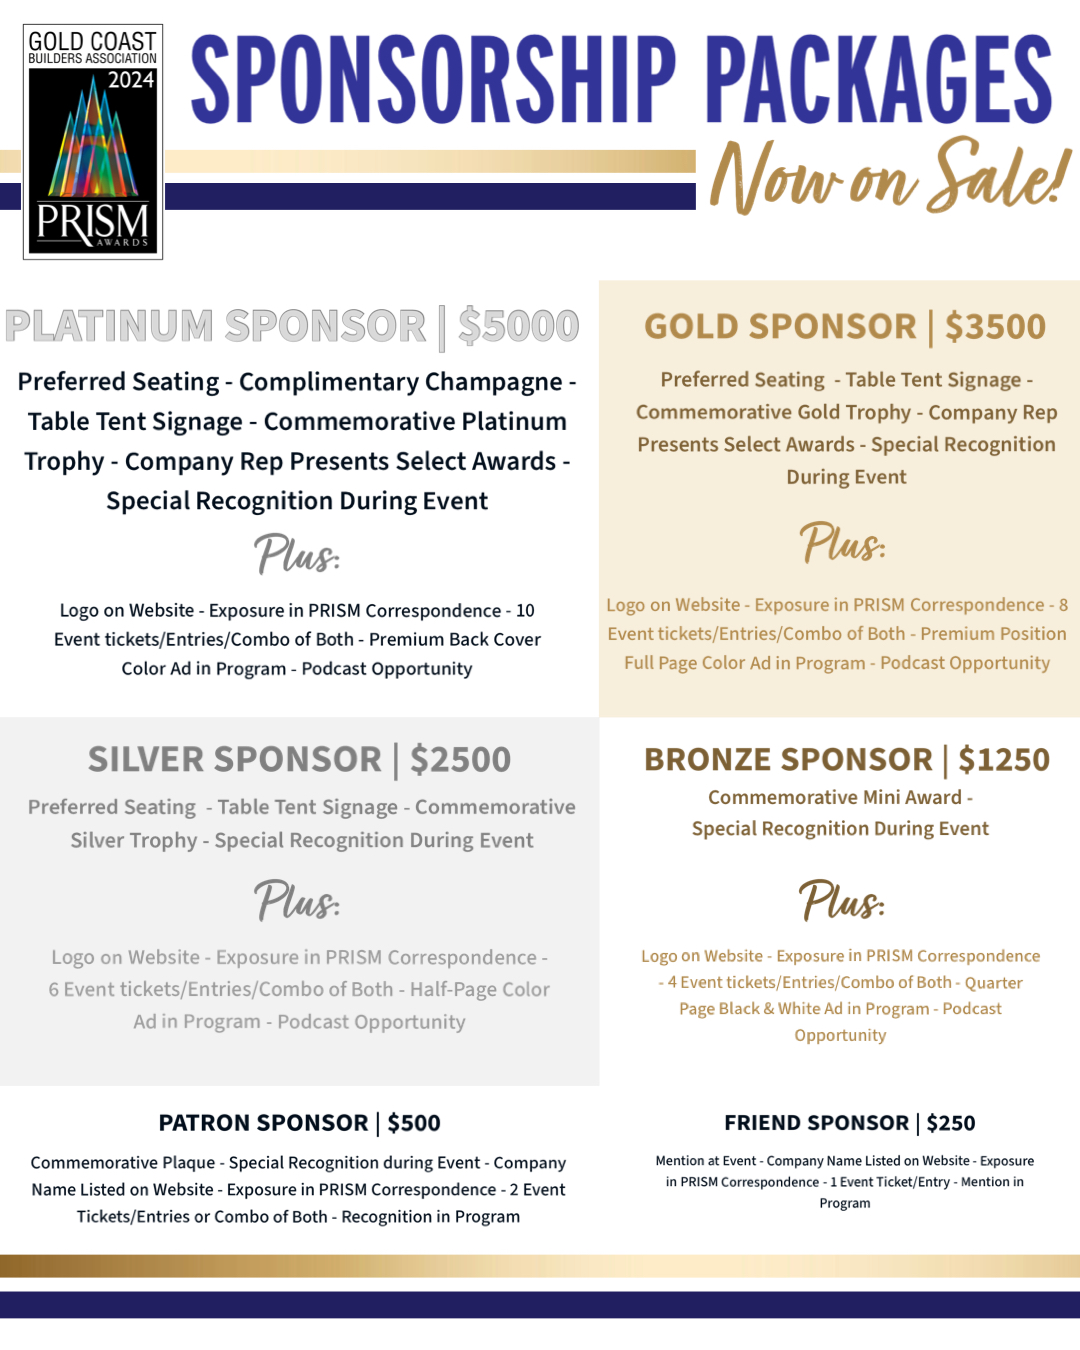 PRISM Sponsorhsip Packages